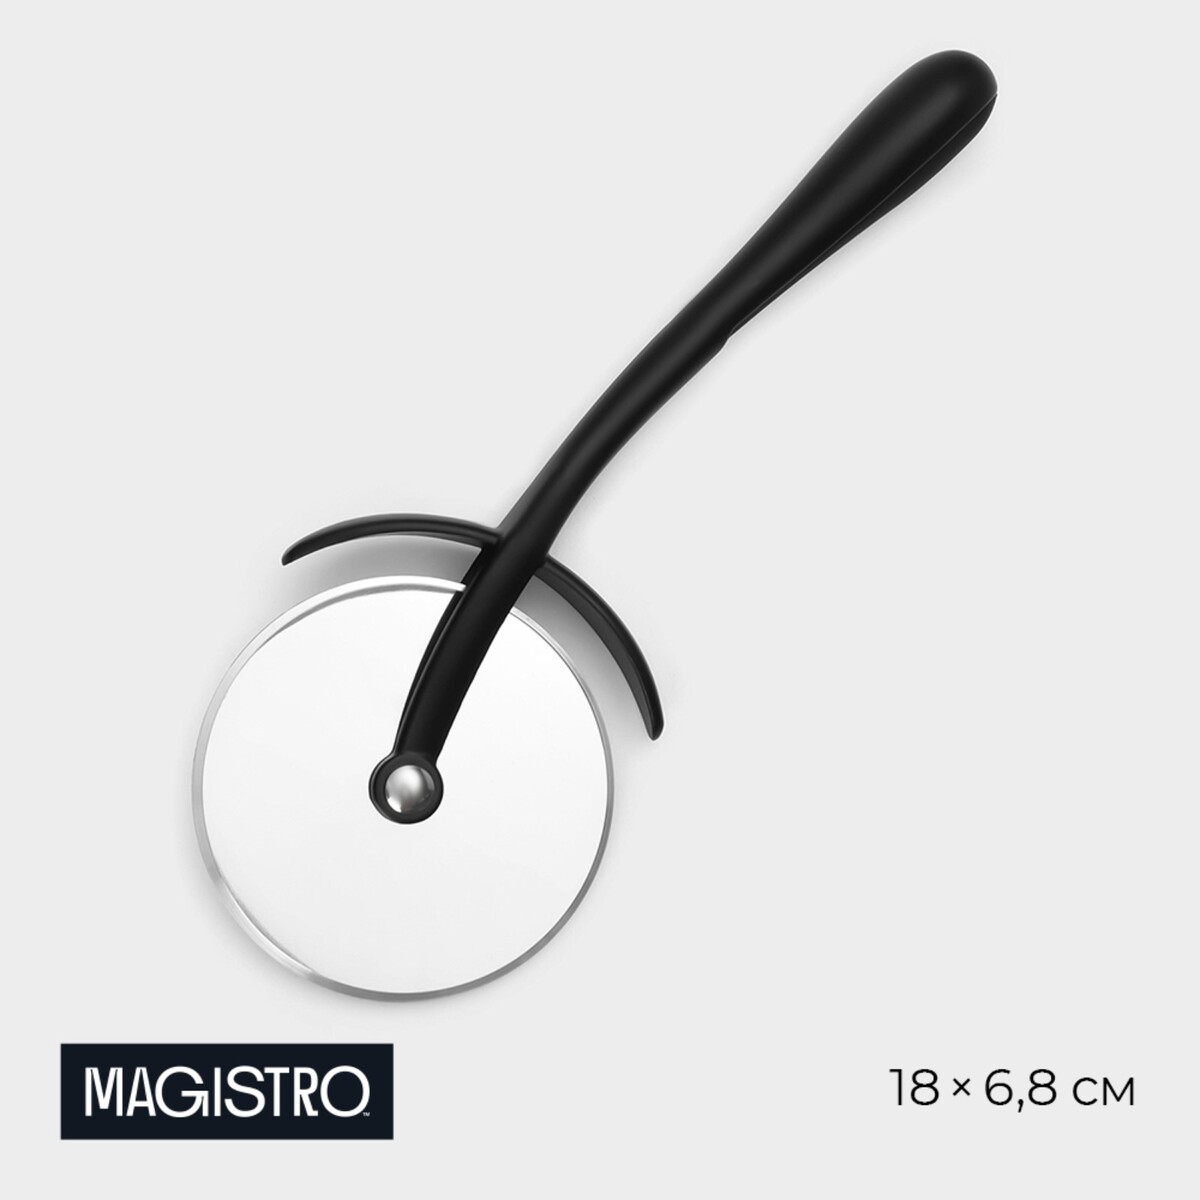 Нож для пиццы и теста magistro vantablack, 18×6,8 см, цвет черный нож для пиццы и теста magistro solid 20 5 см d 6 5 см хромированный